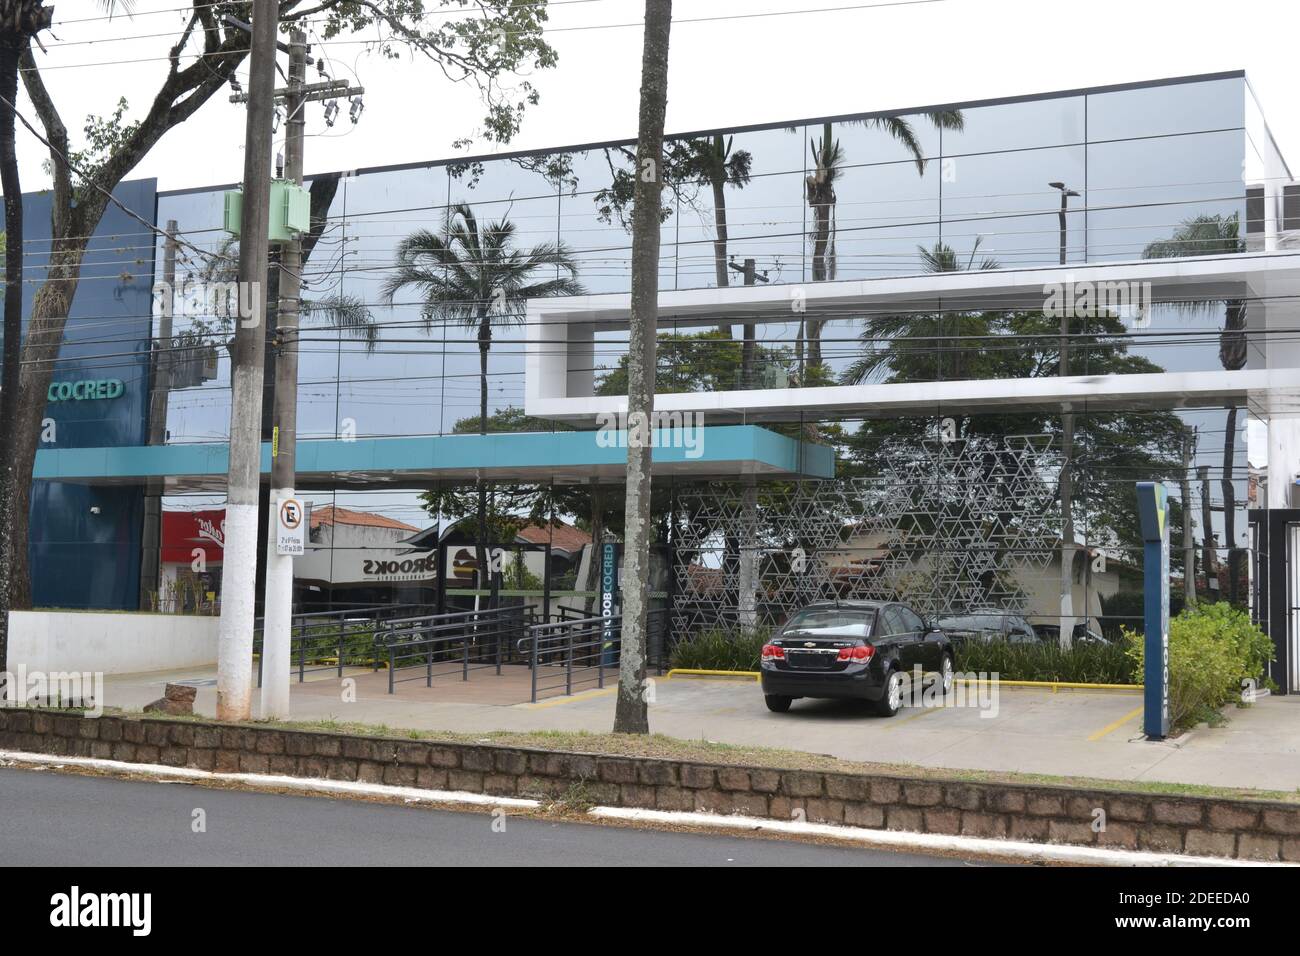 Façade de banque privée, façade moderne en verre, avec parking devant, voiture, entrée pour fauteuils roulants, Brésil, Amérique du Sud Banque D'Images